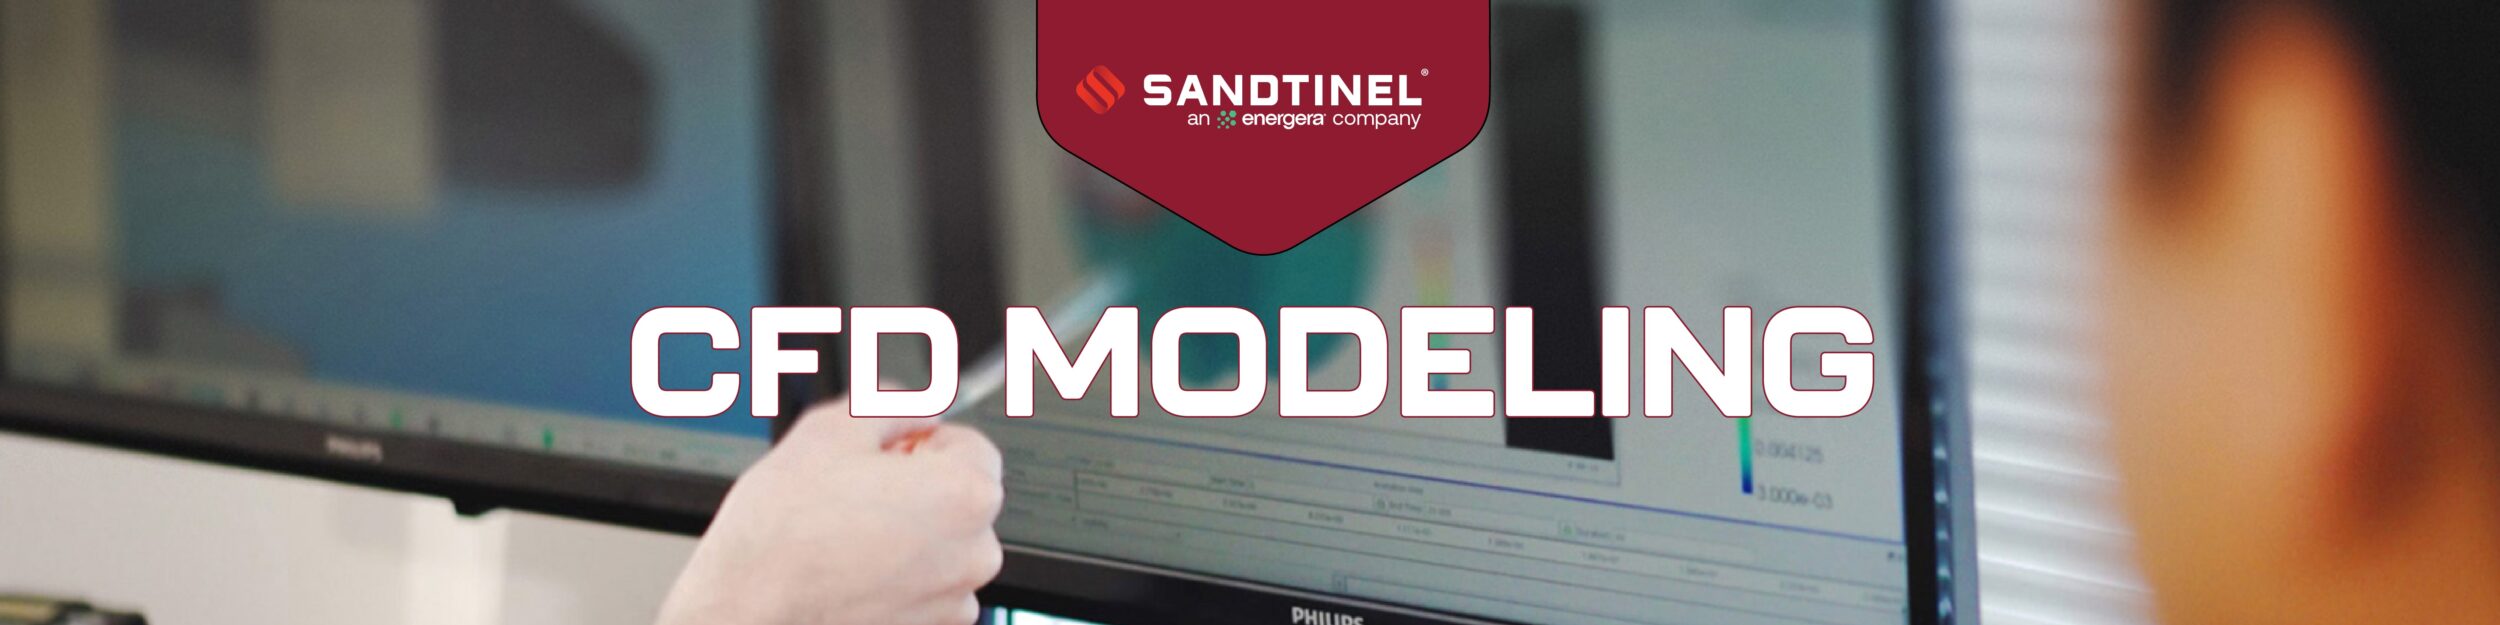 Website Article Header Sandtinel Cfd Modeling 01 Min